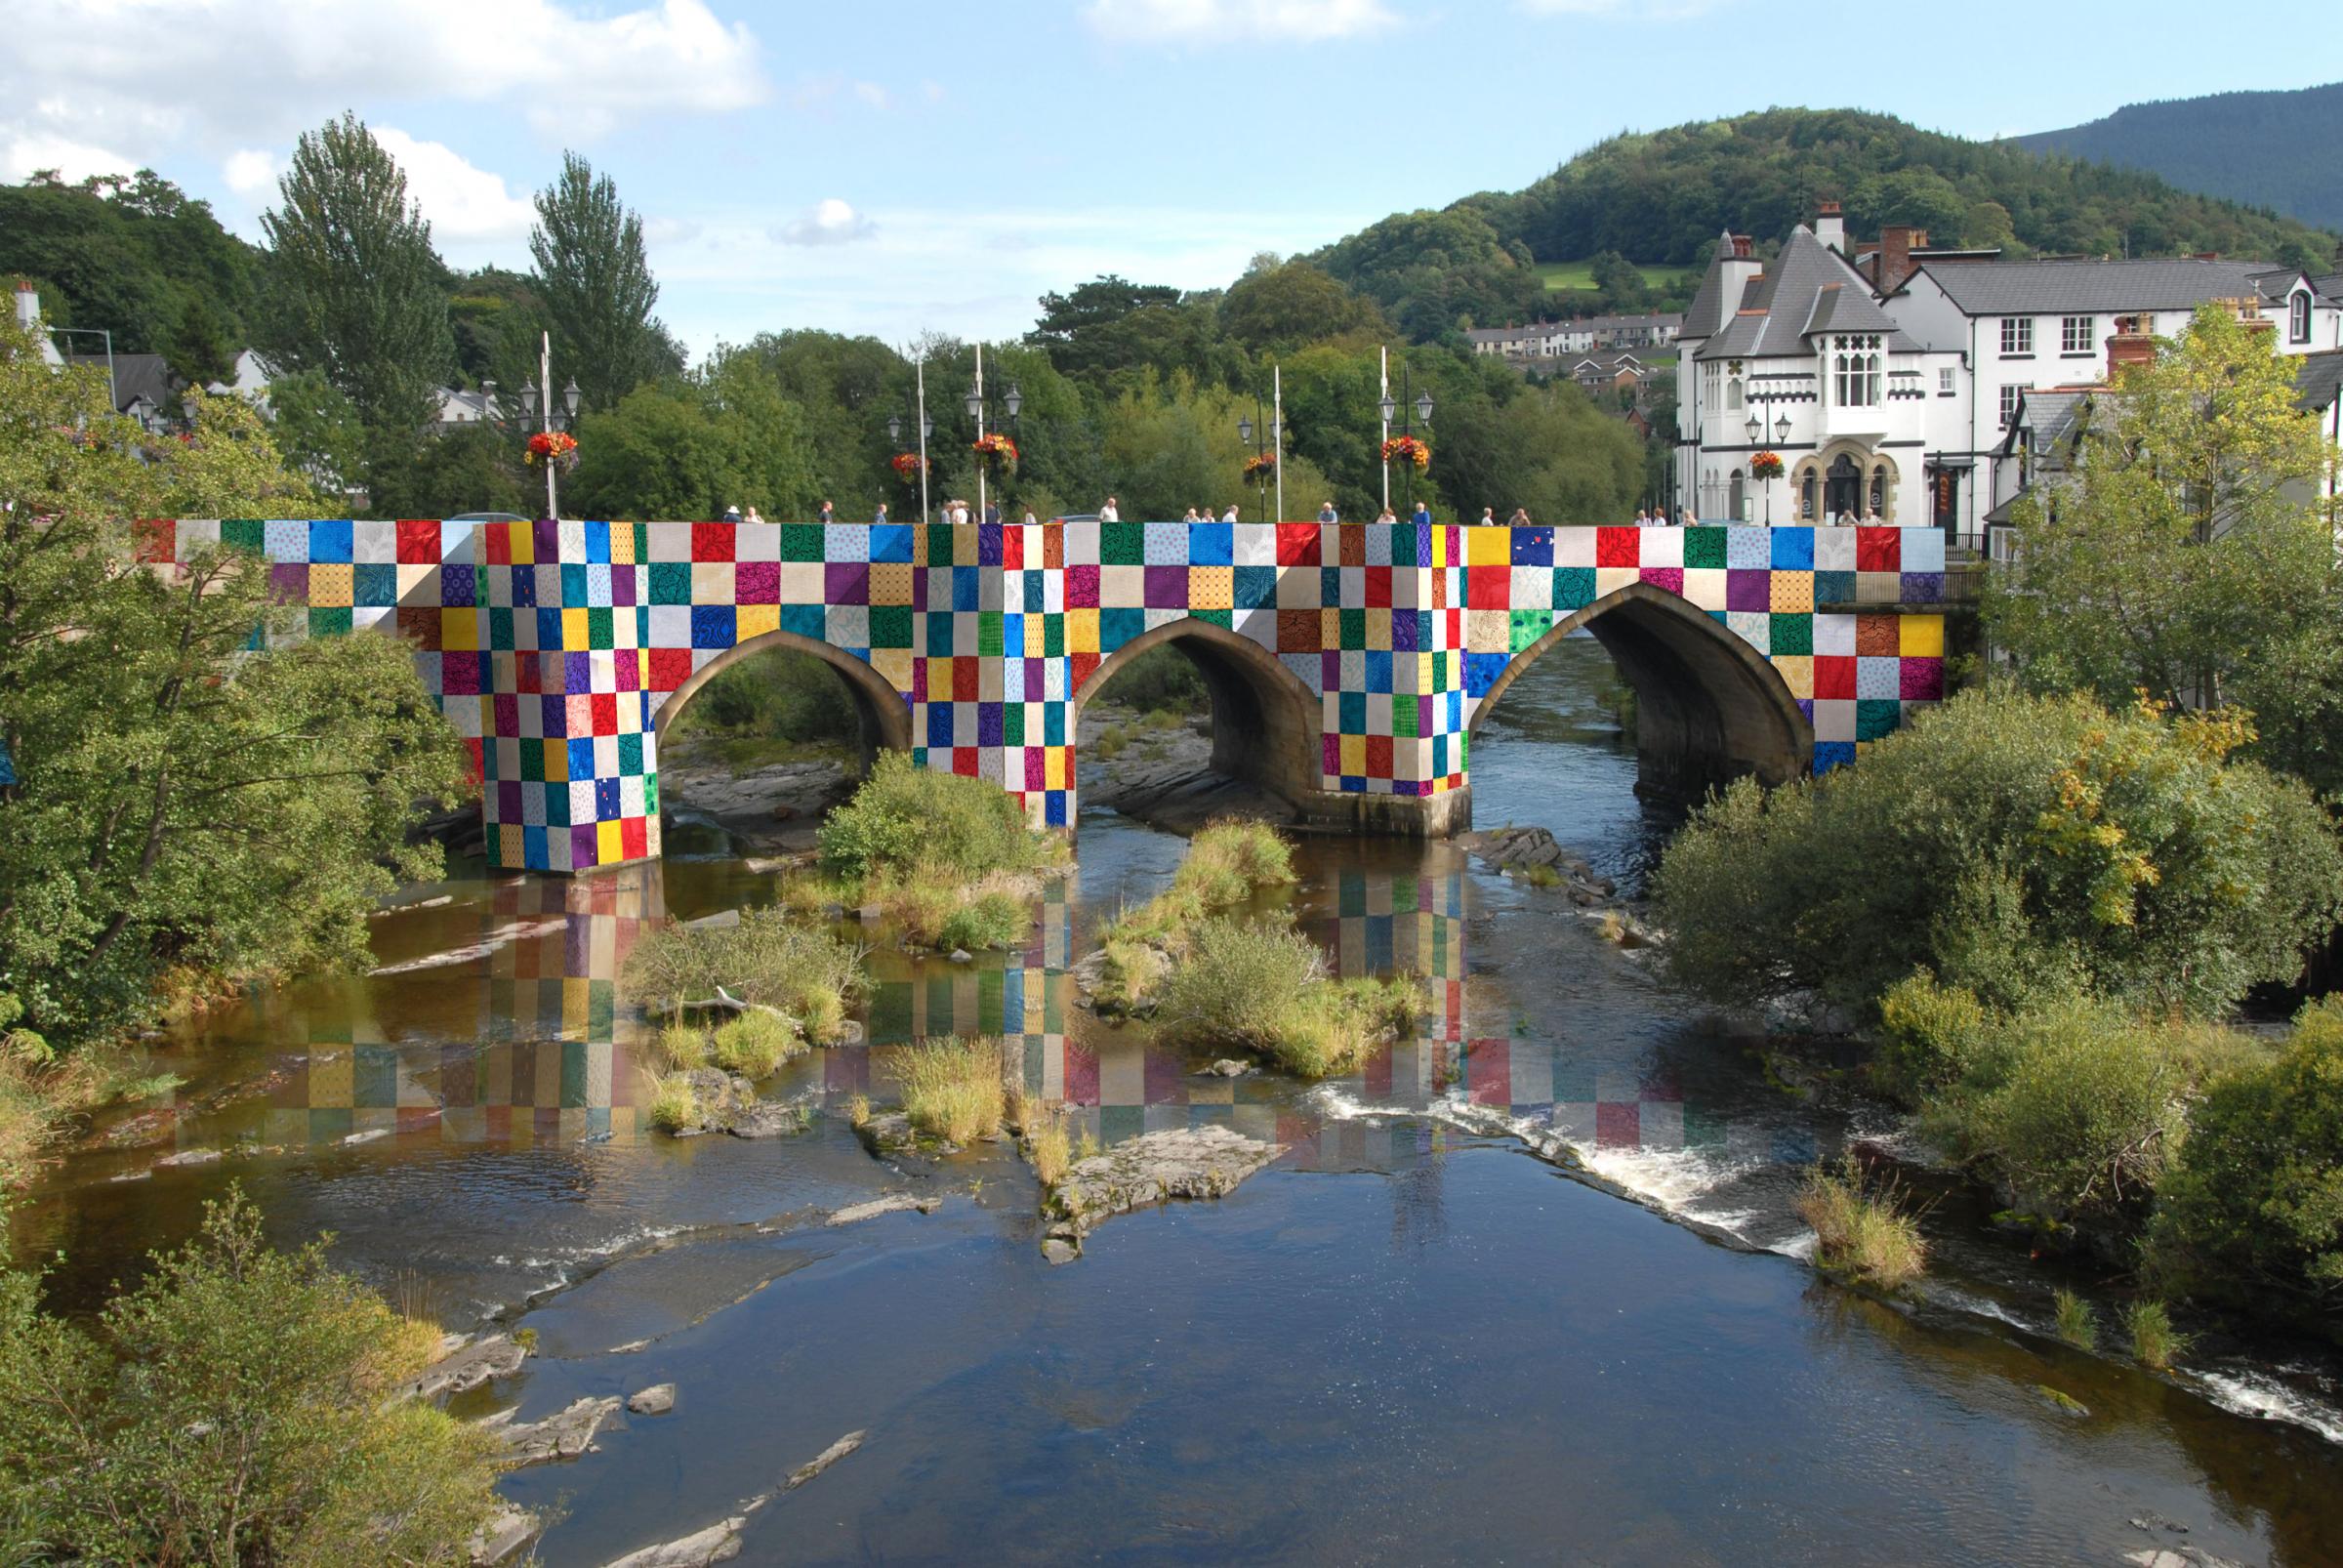 Mock-up of Llangollen Bridge artwork by artist Luke Jerram.